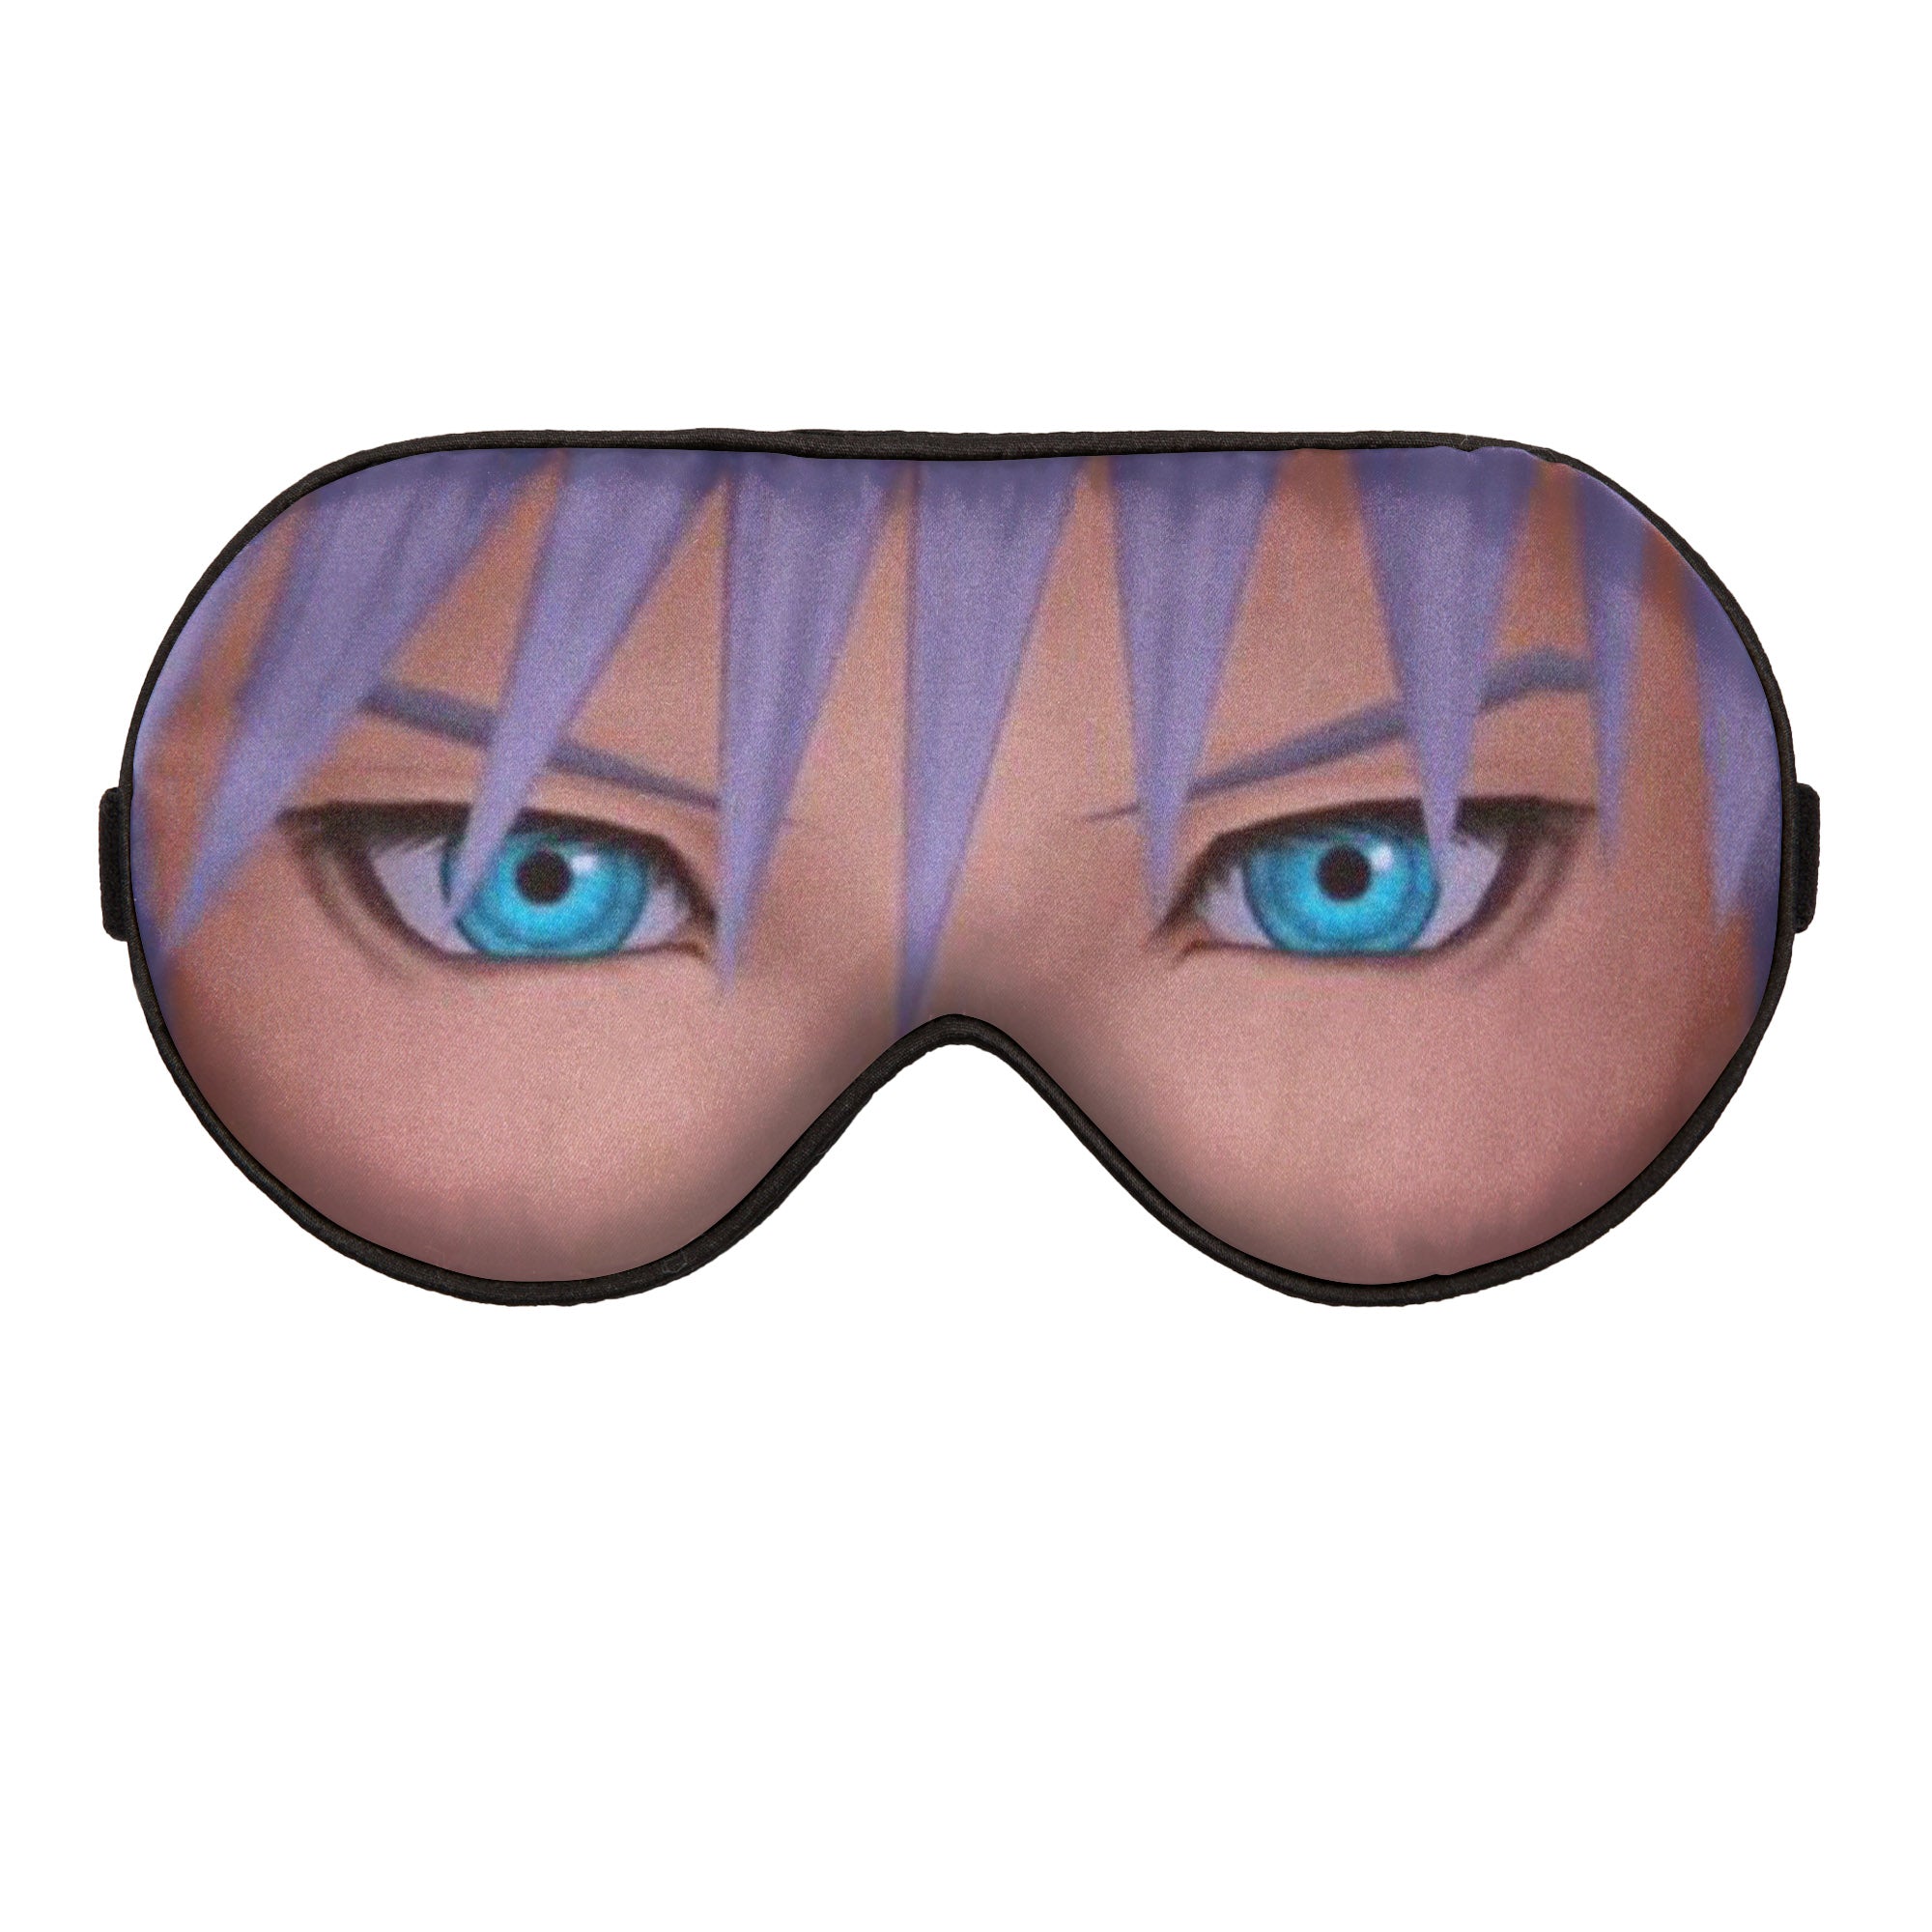 Riku from Kingdom Hearts Custom Sleep Mask